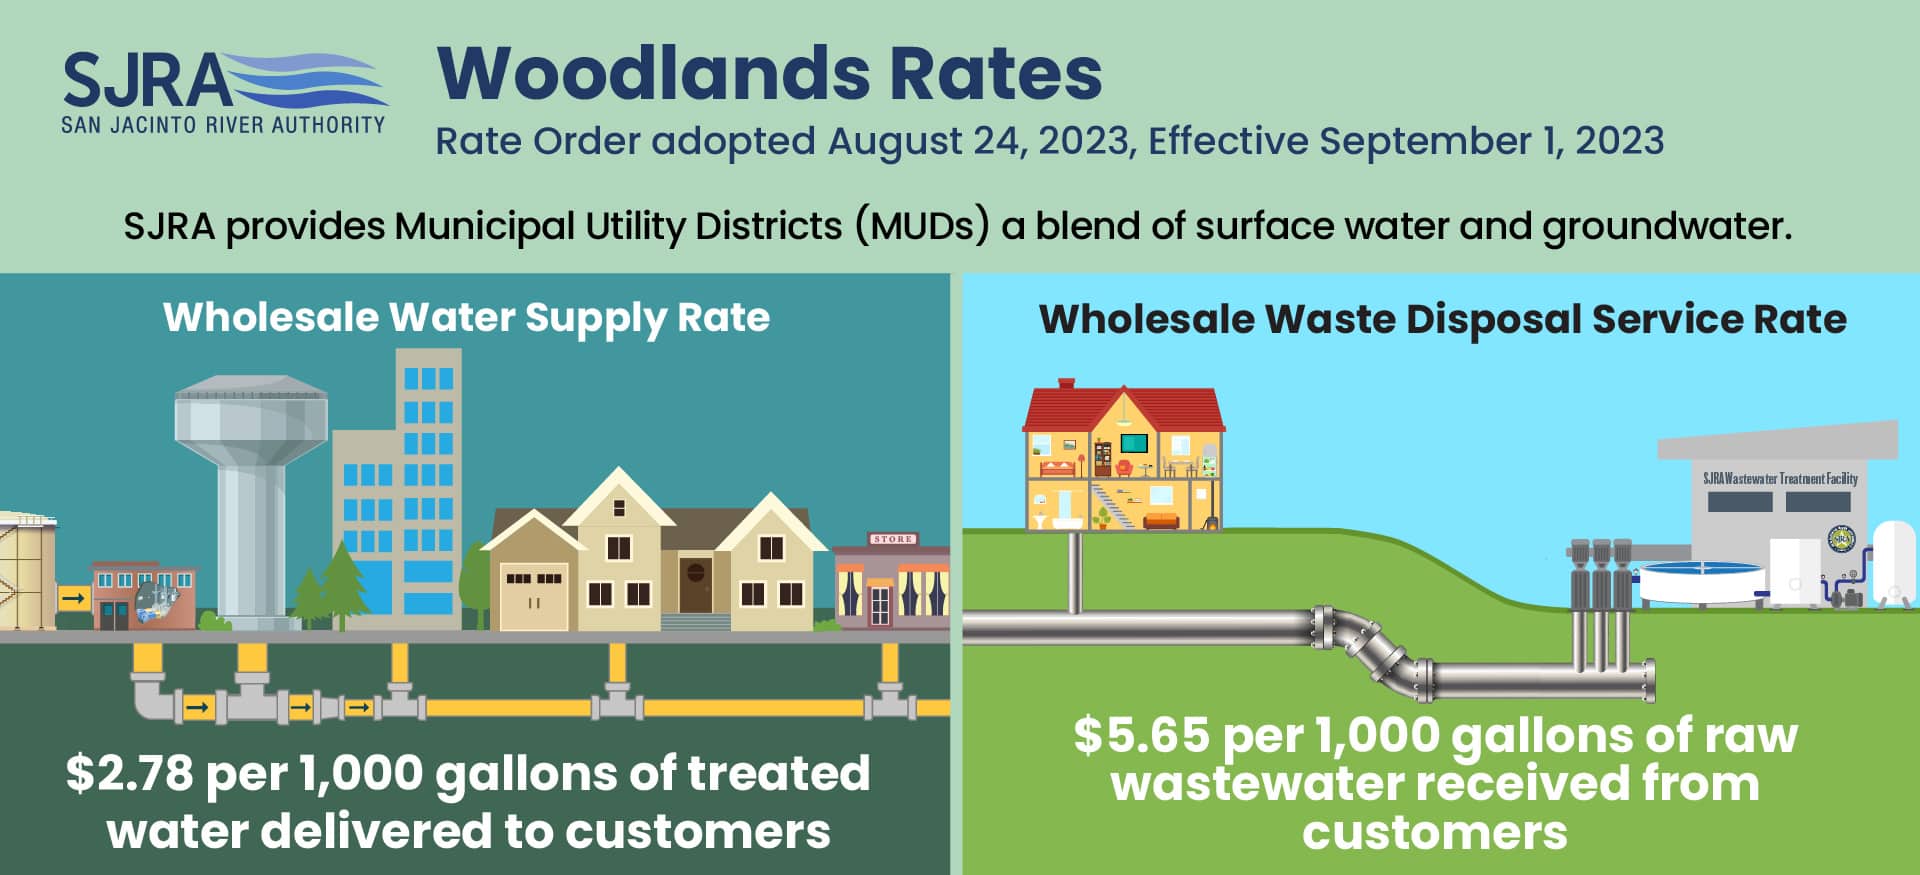 Woodlands Rates